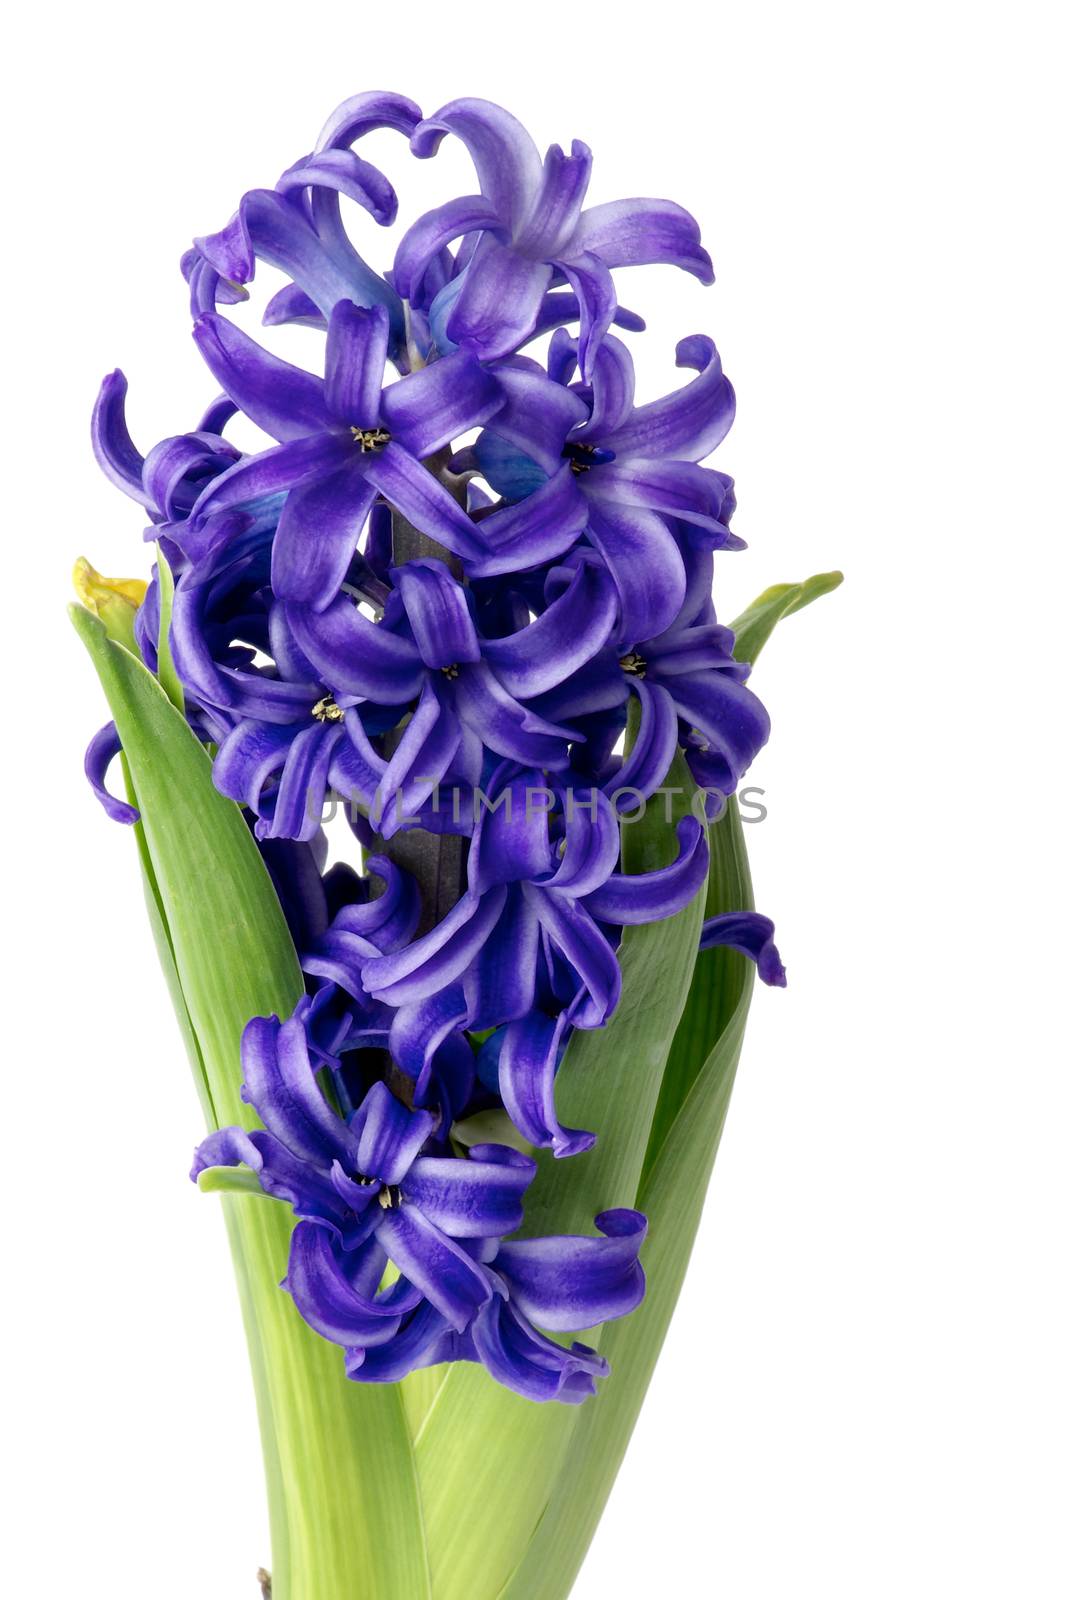 Purple Hyacinth by zhekos